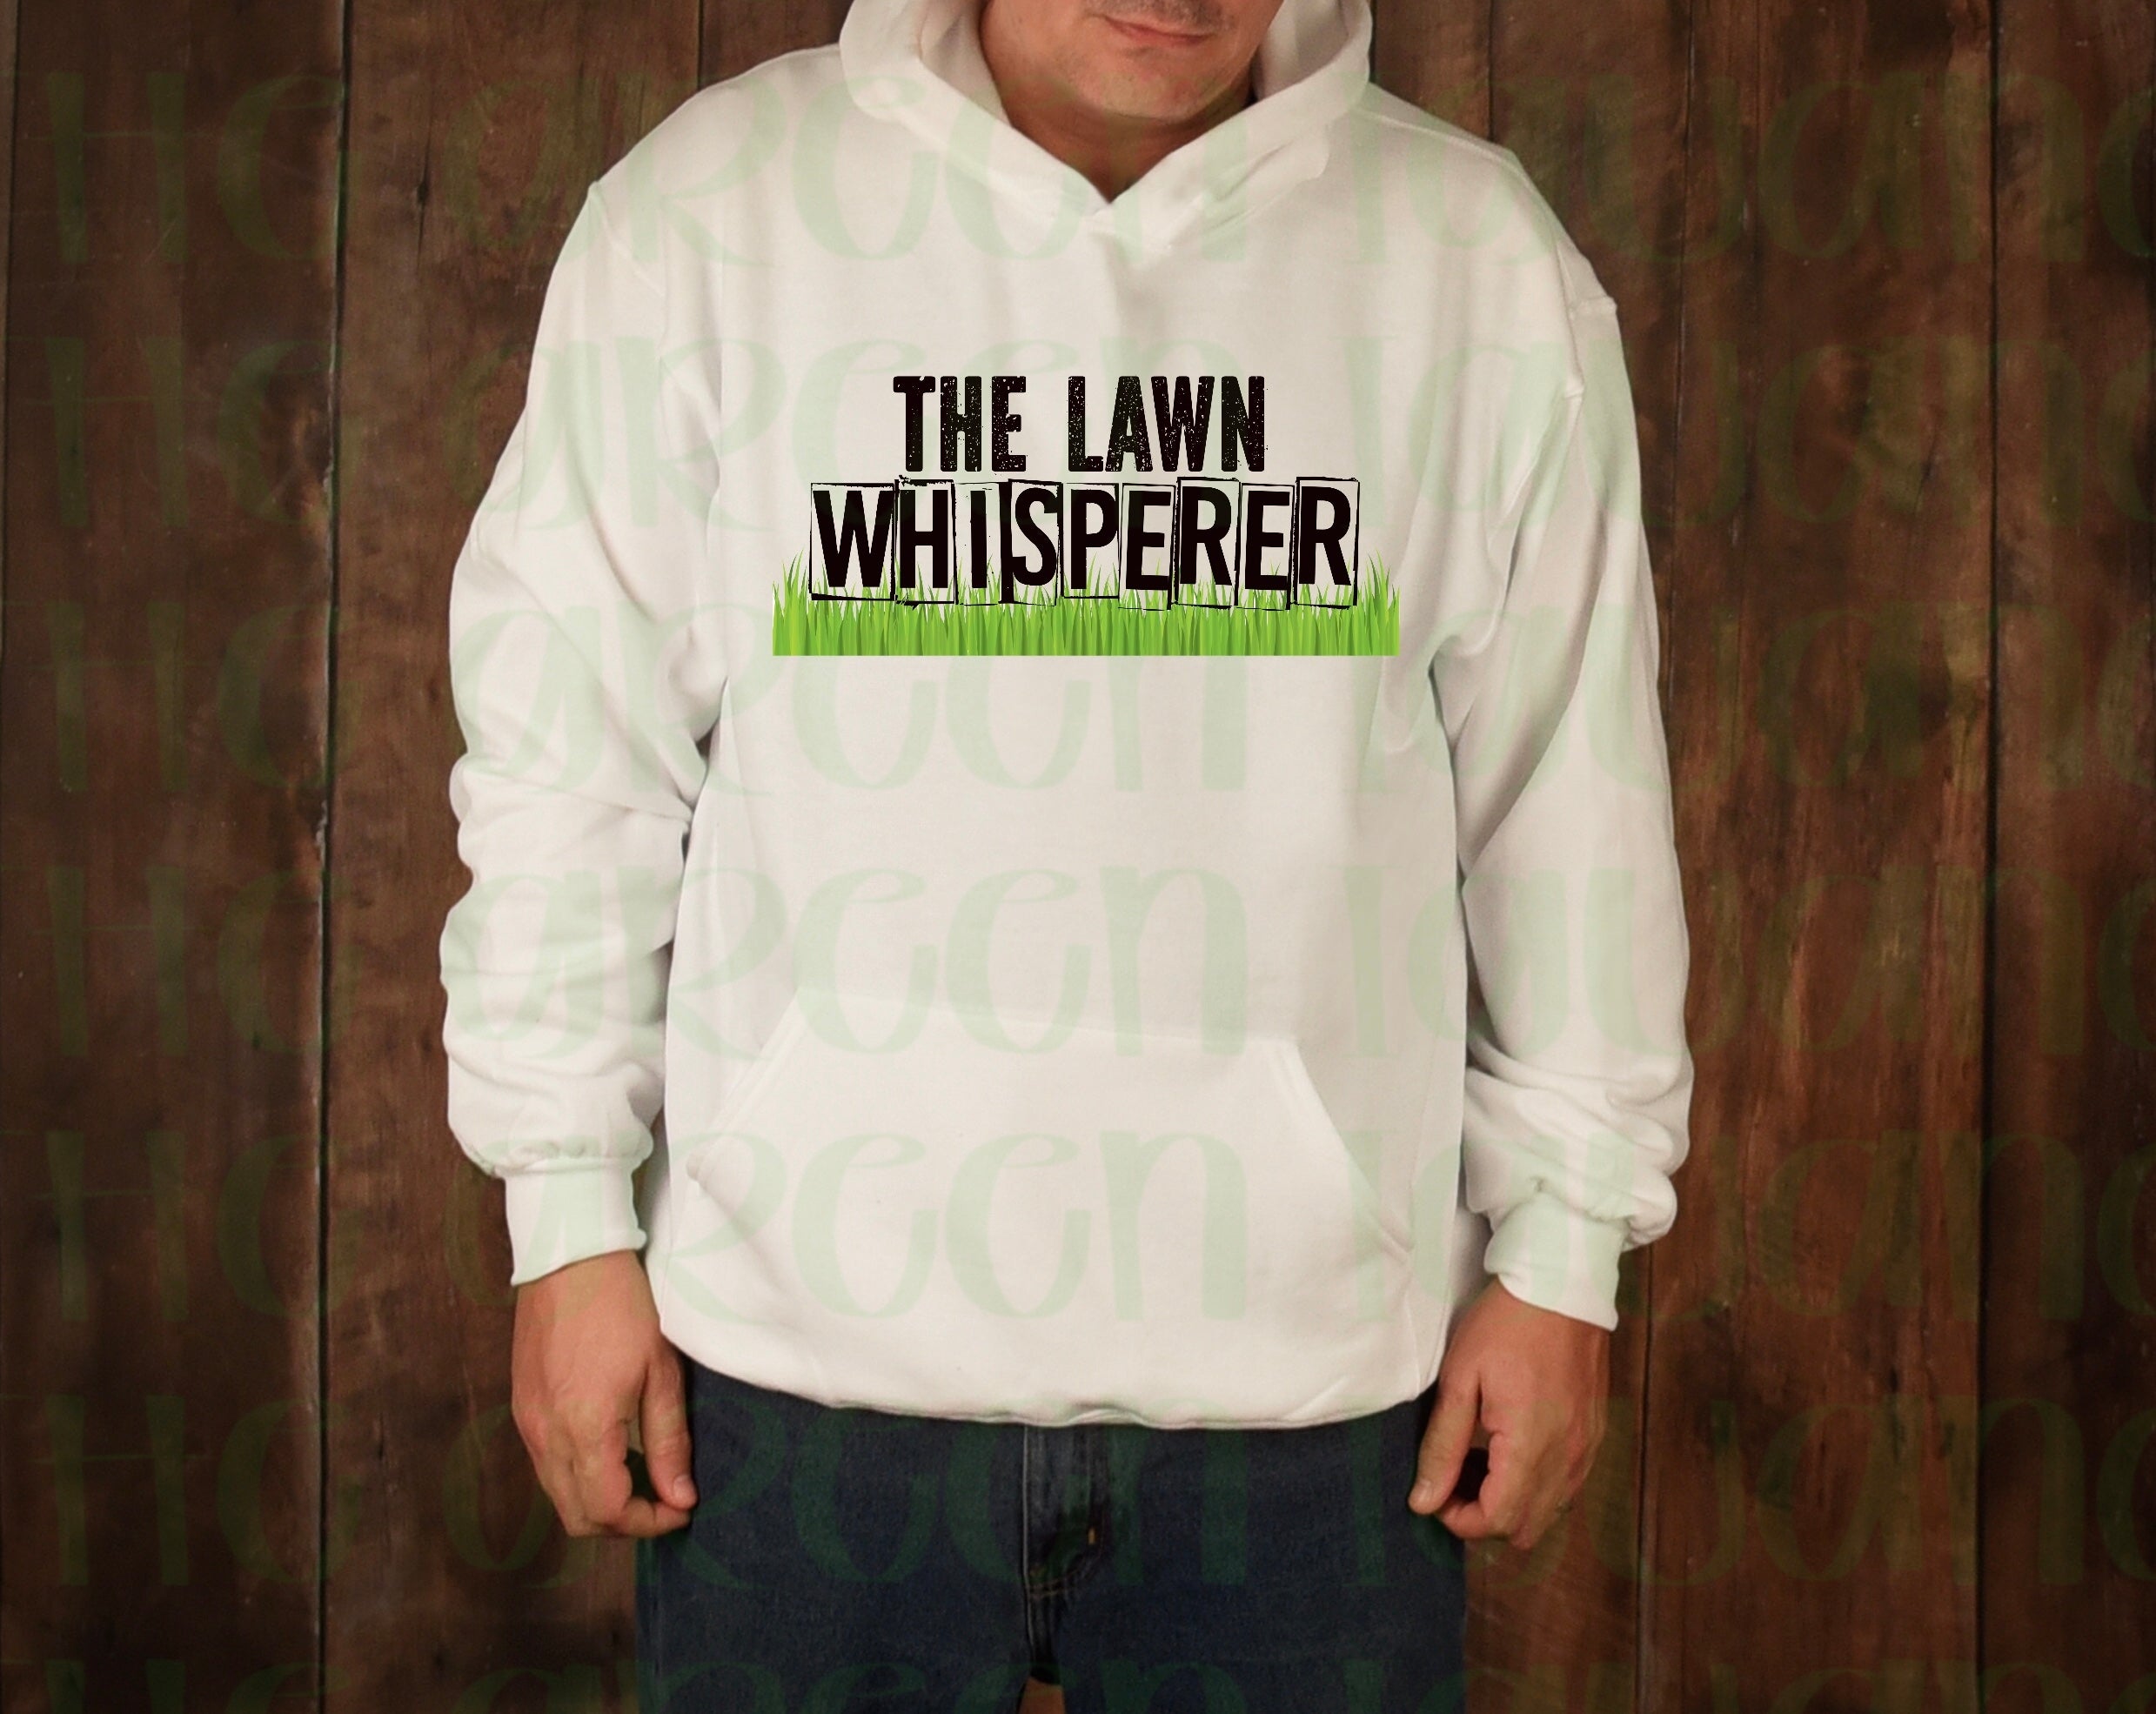 The lawn whisperer - DIGITAL